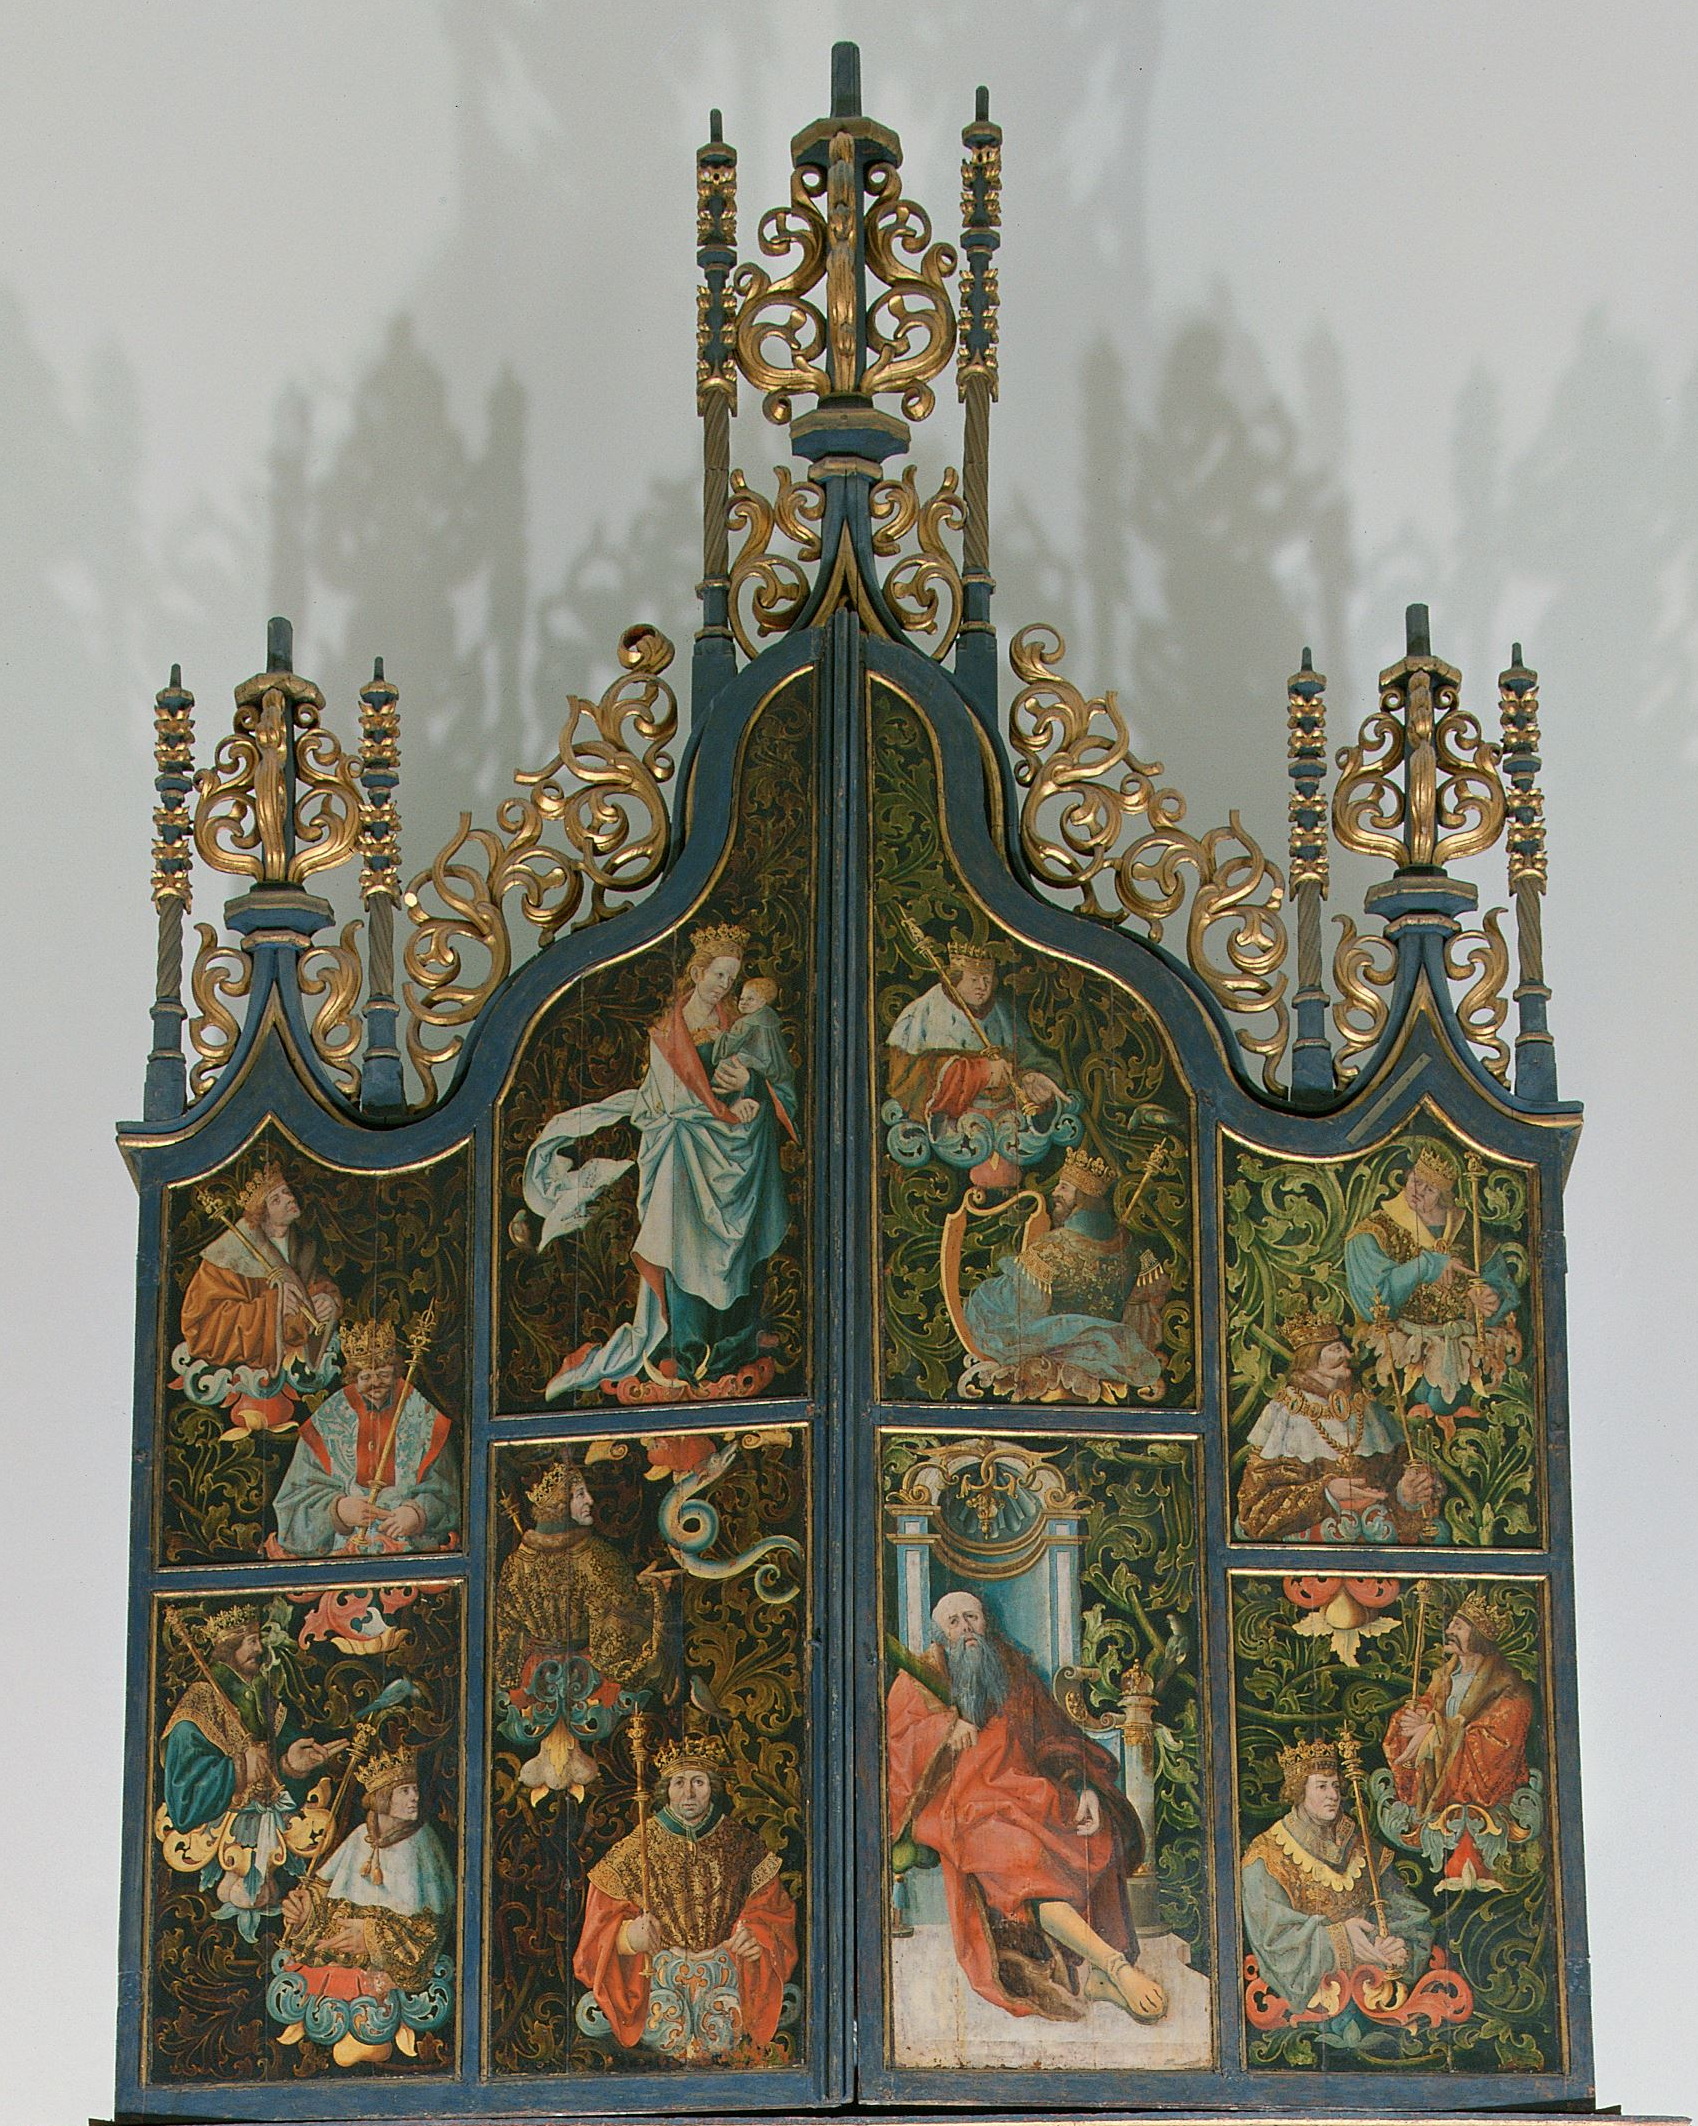 Het orgel van Scheemda uit 1526 met gesloten luiken bevindt zich	niet	meer in Scheemda, maar ligt opgeslagen in het depot van het Rijksmuseum te Amsterdam in Lelystad